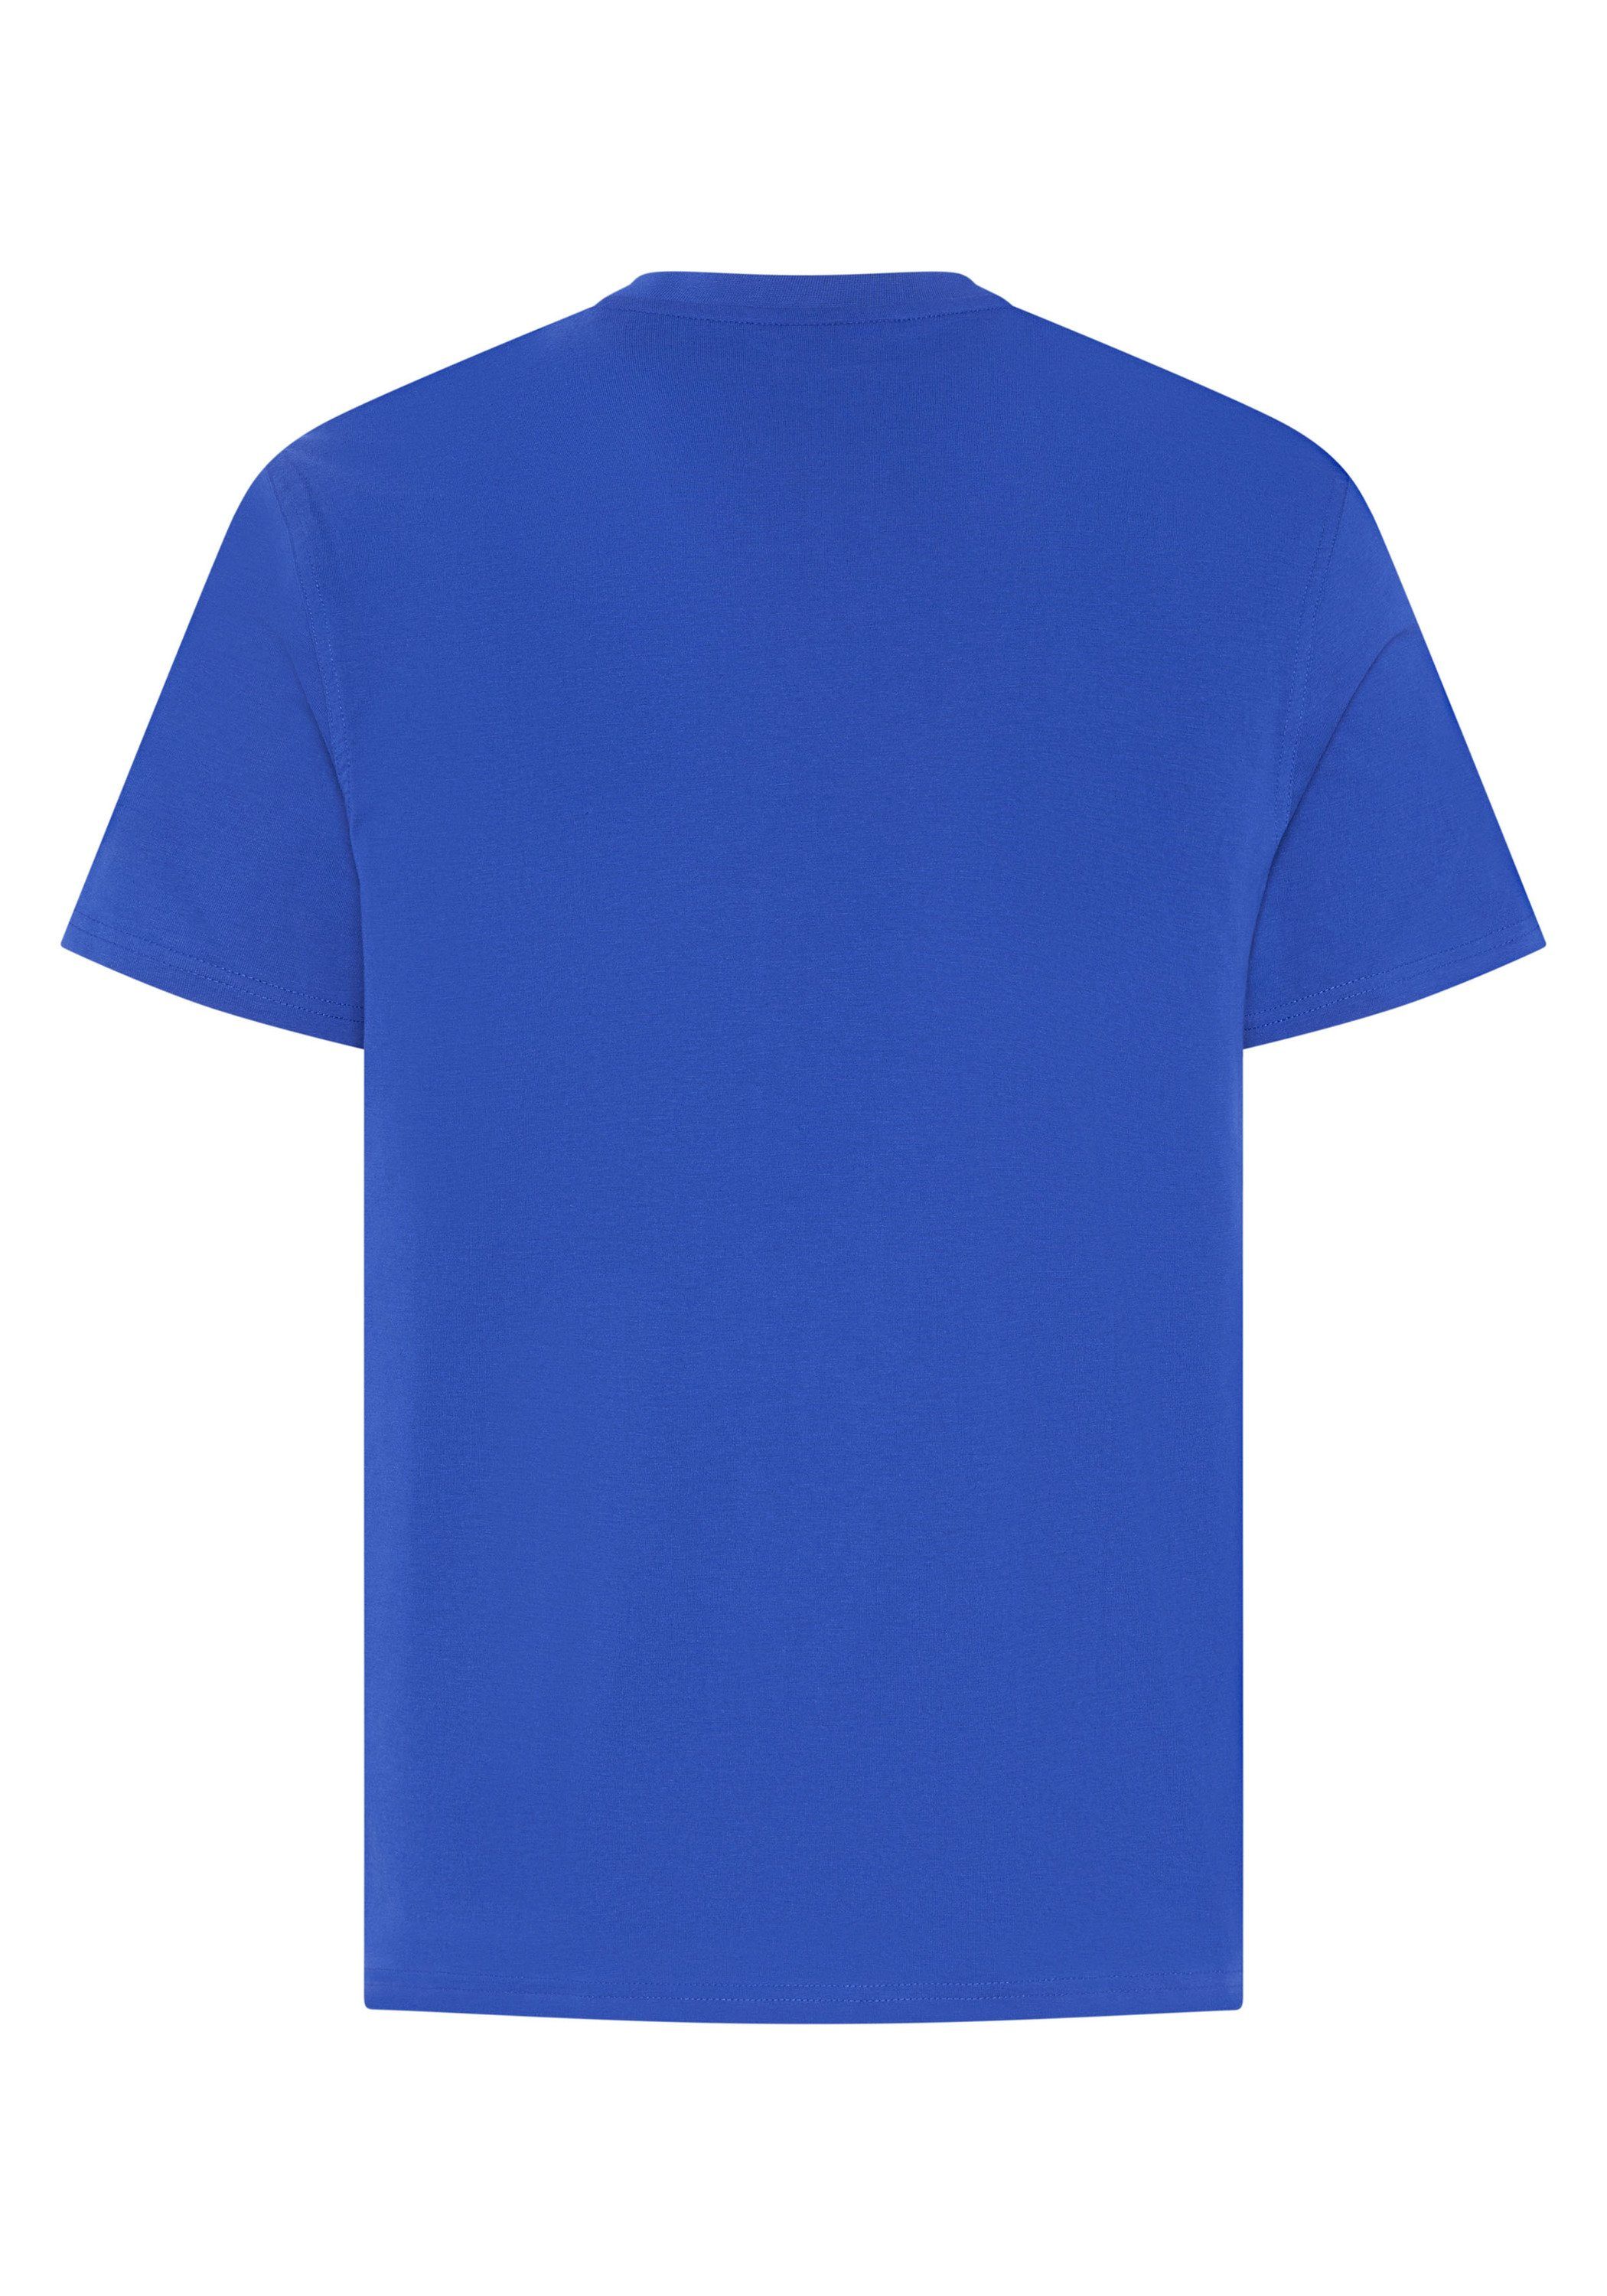 ultramarinblau Expand einlaufvorbehandelt T-Shirt